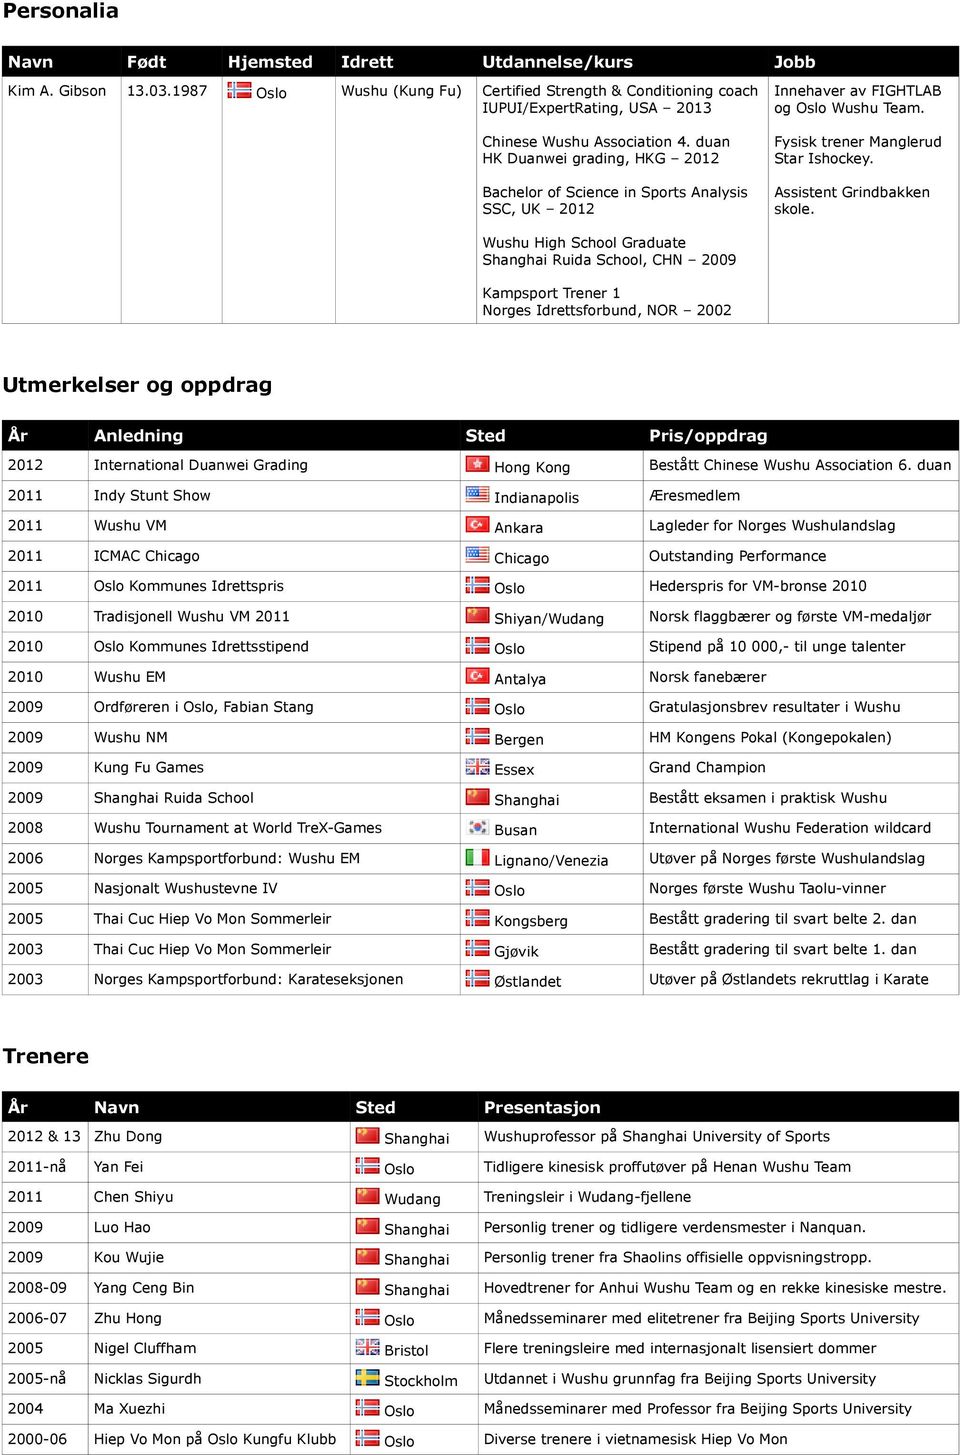 duan HK Duanwei grading, HKG 2012 Bachelor of Science in Sports Analysis SSC, UK 2012 Innehaver av FIGHTLAB og Oslo Wushu Team. Fysisk trener Manglerud Star Ishockey. Assistent Grindbakken skole.